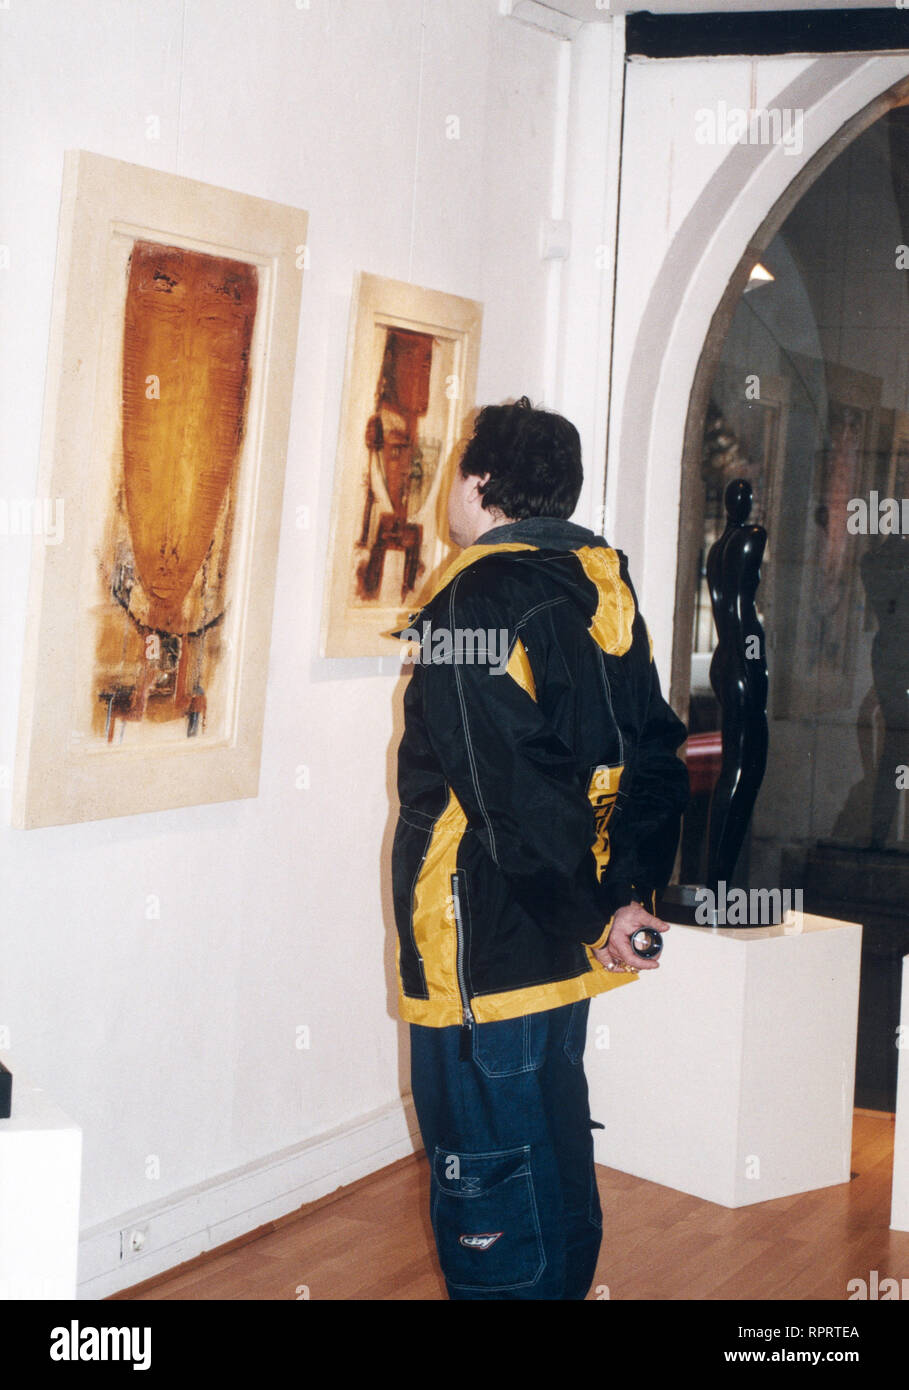 Bildmotiv: Parigi, Galerie-Besucher in einer der zahlreichen gallerie Marais-Viertel im. 01/2001 / Überschrift: Parigi Foto Stock